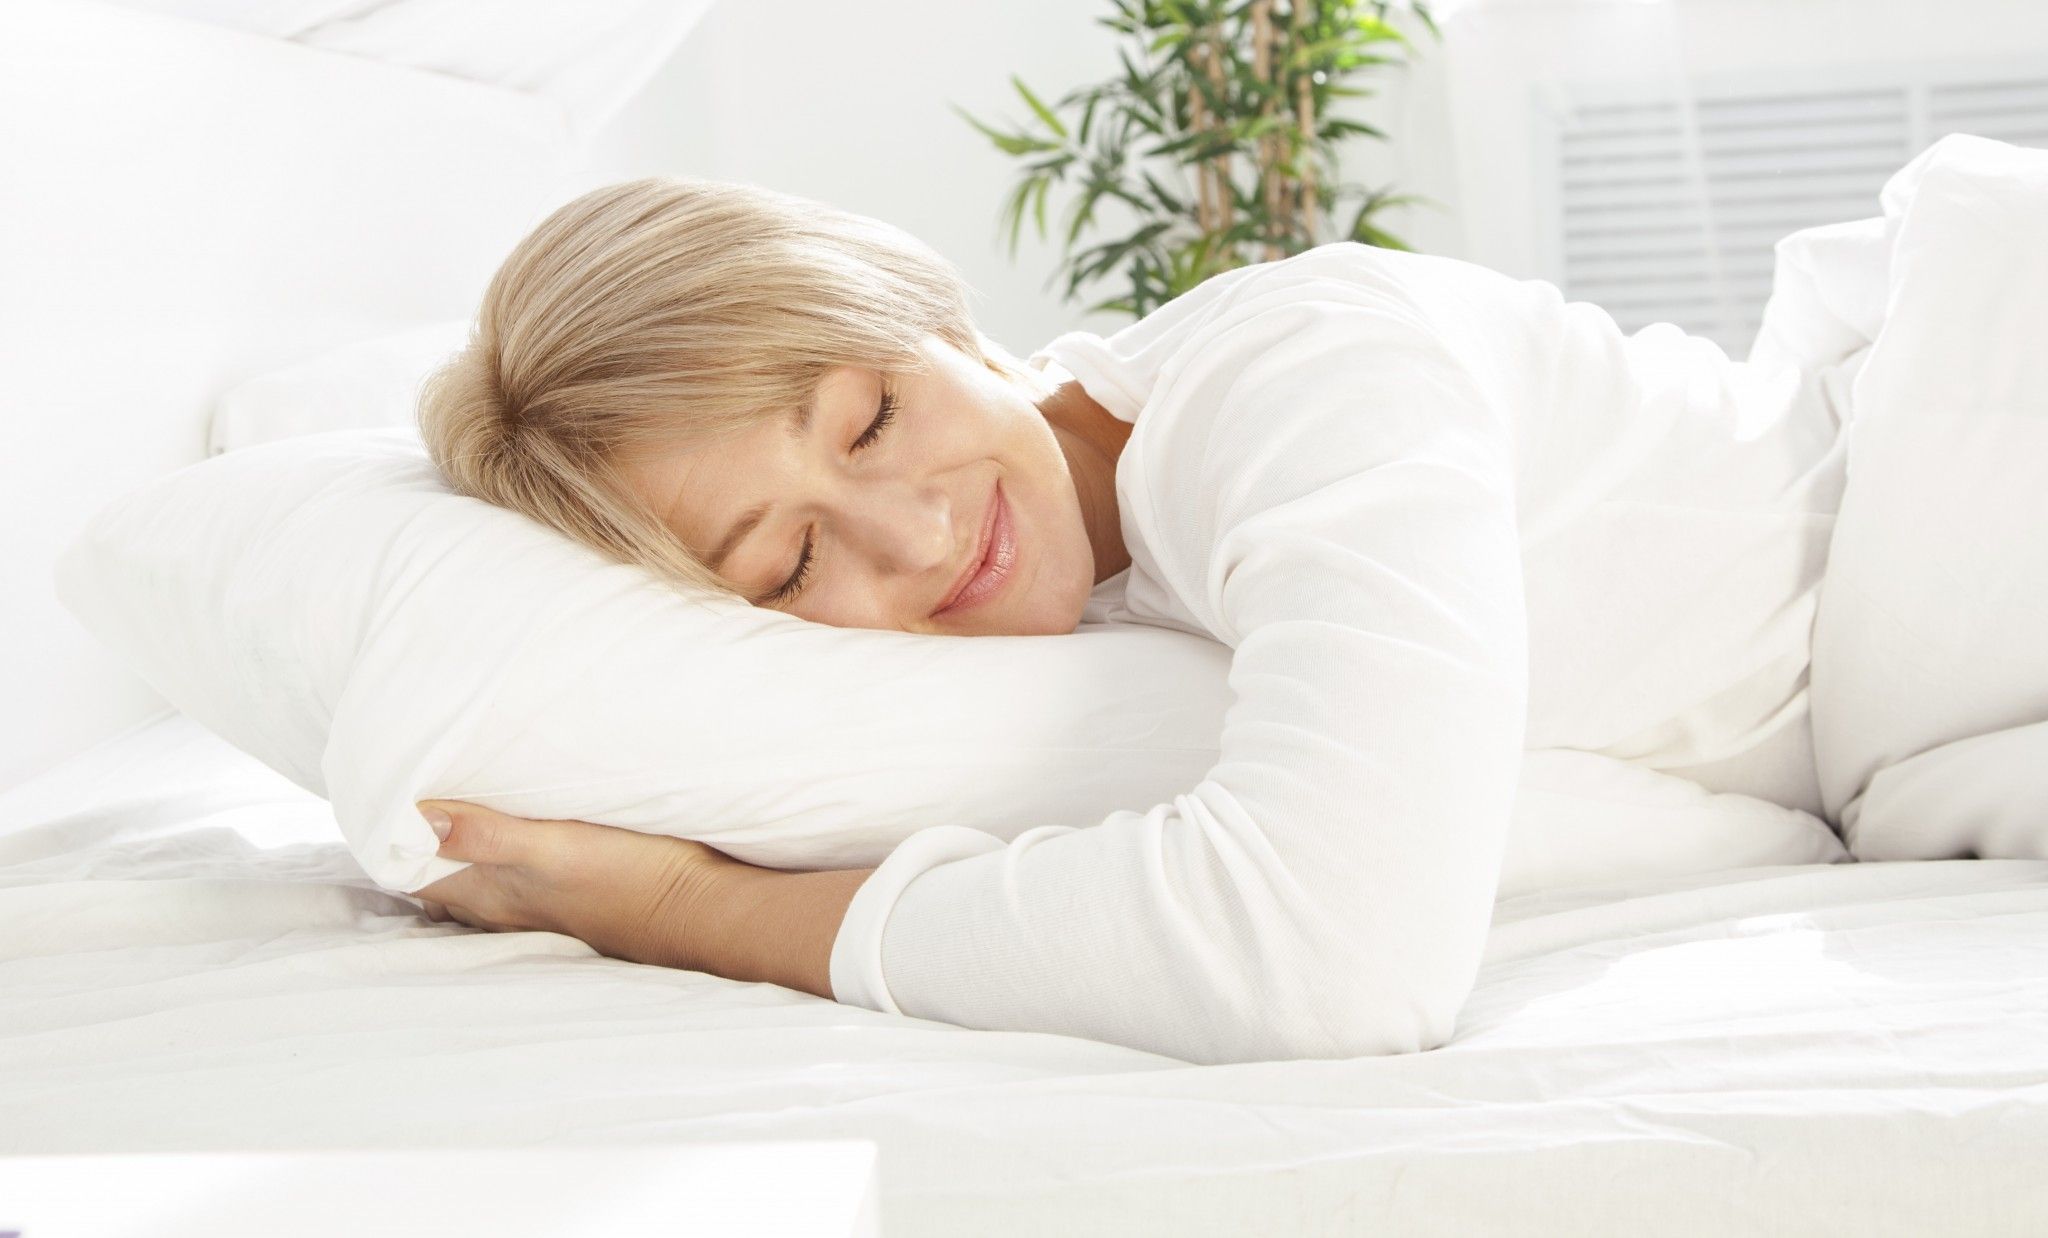 Grandma tips for better sleep